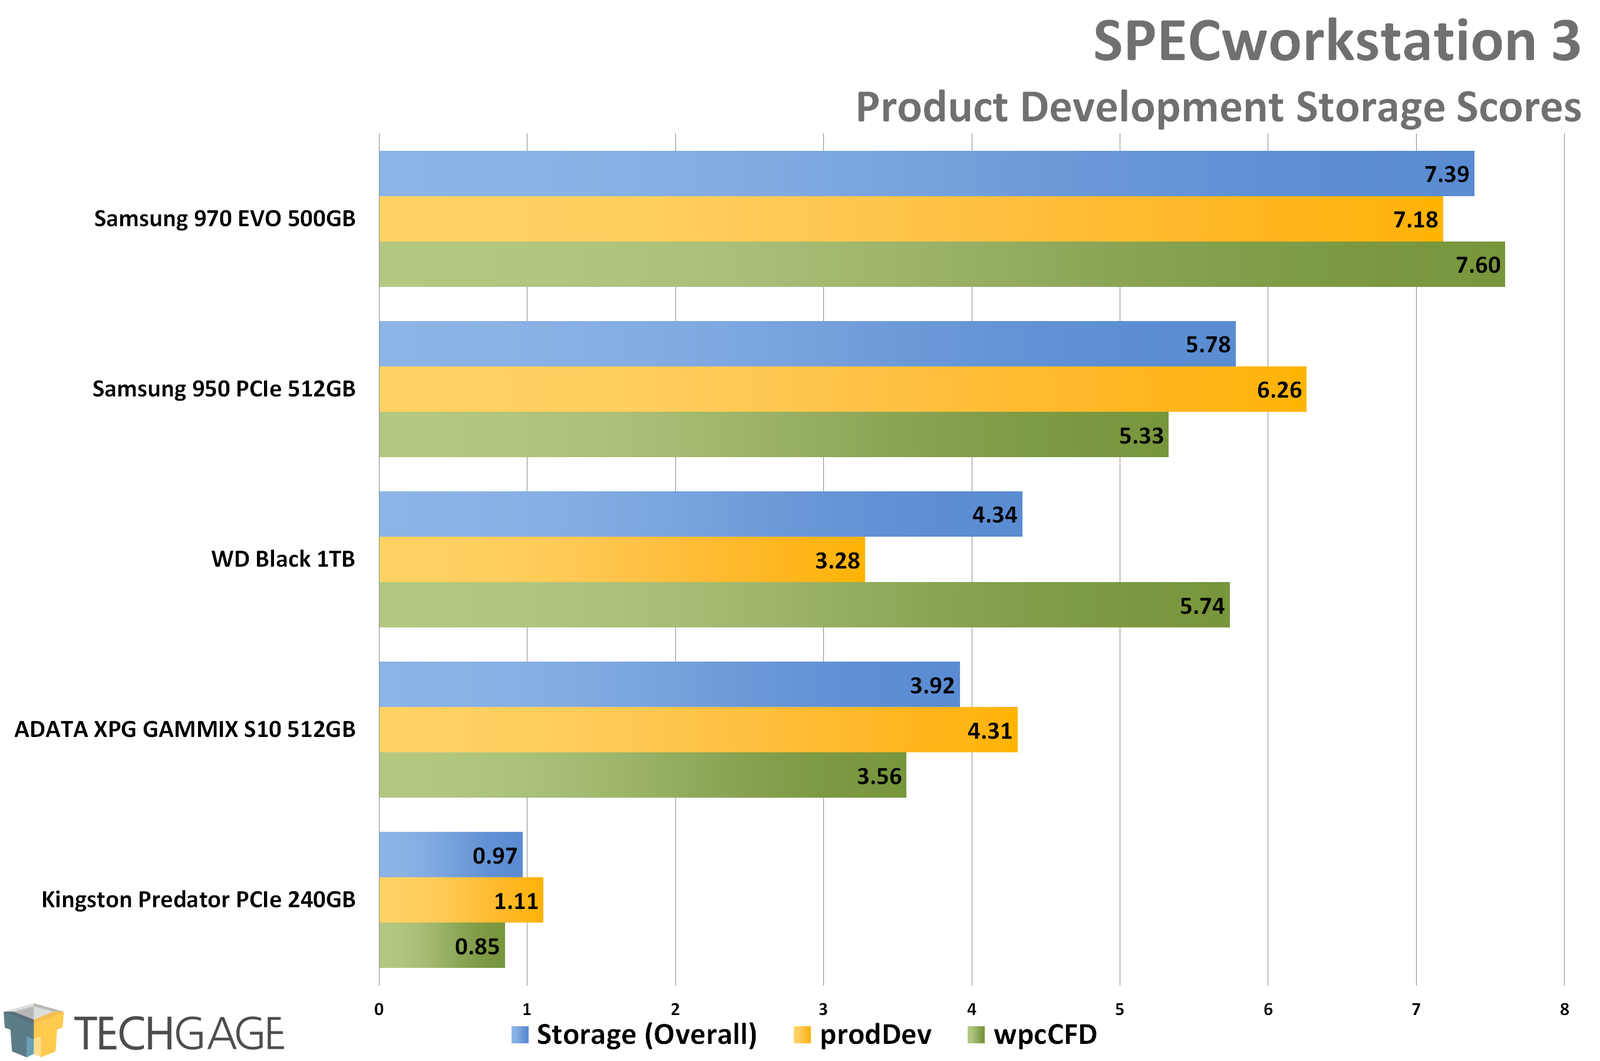 SPECworkstation 3 - Product Development Storage Scores